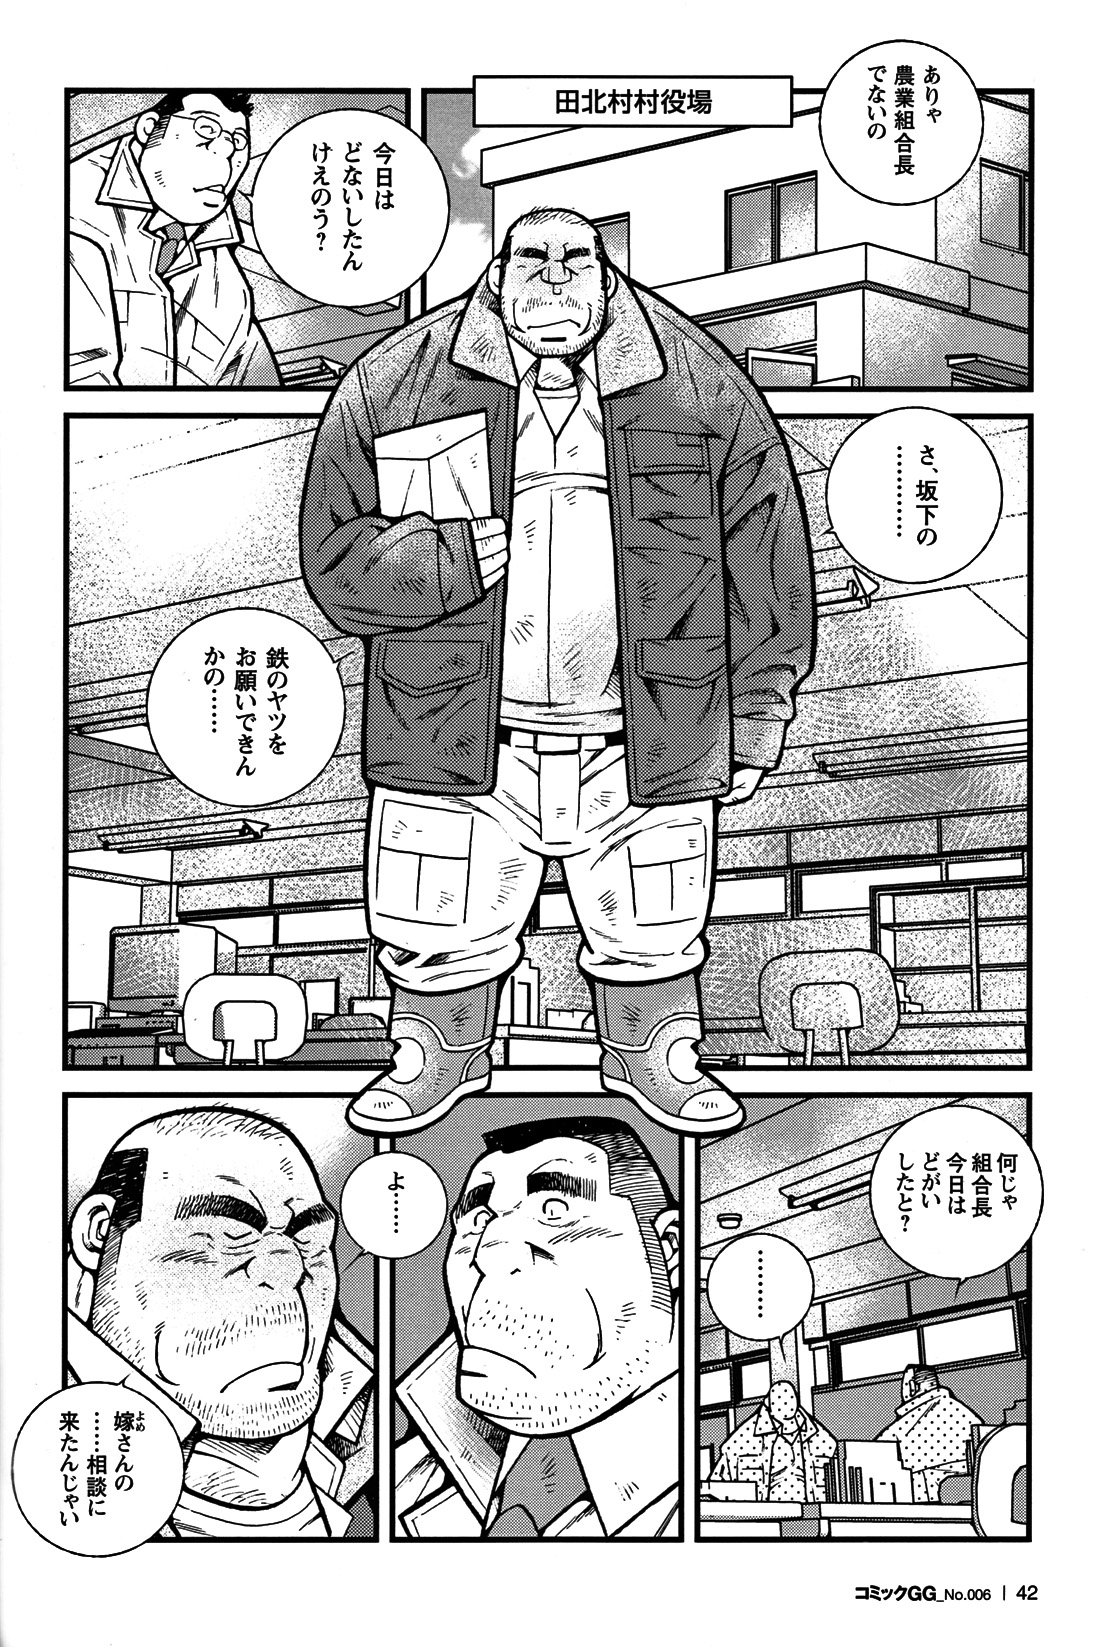 Comic G-men Gaho No. 06 Nikutai Roudousha page 37 full